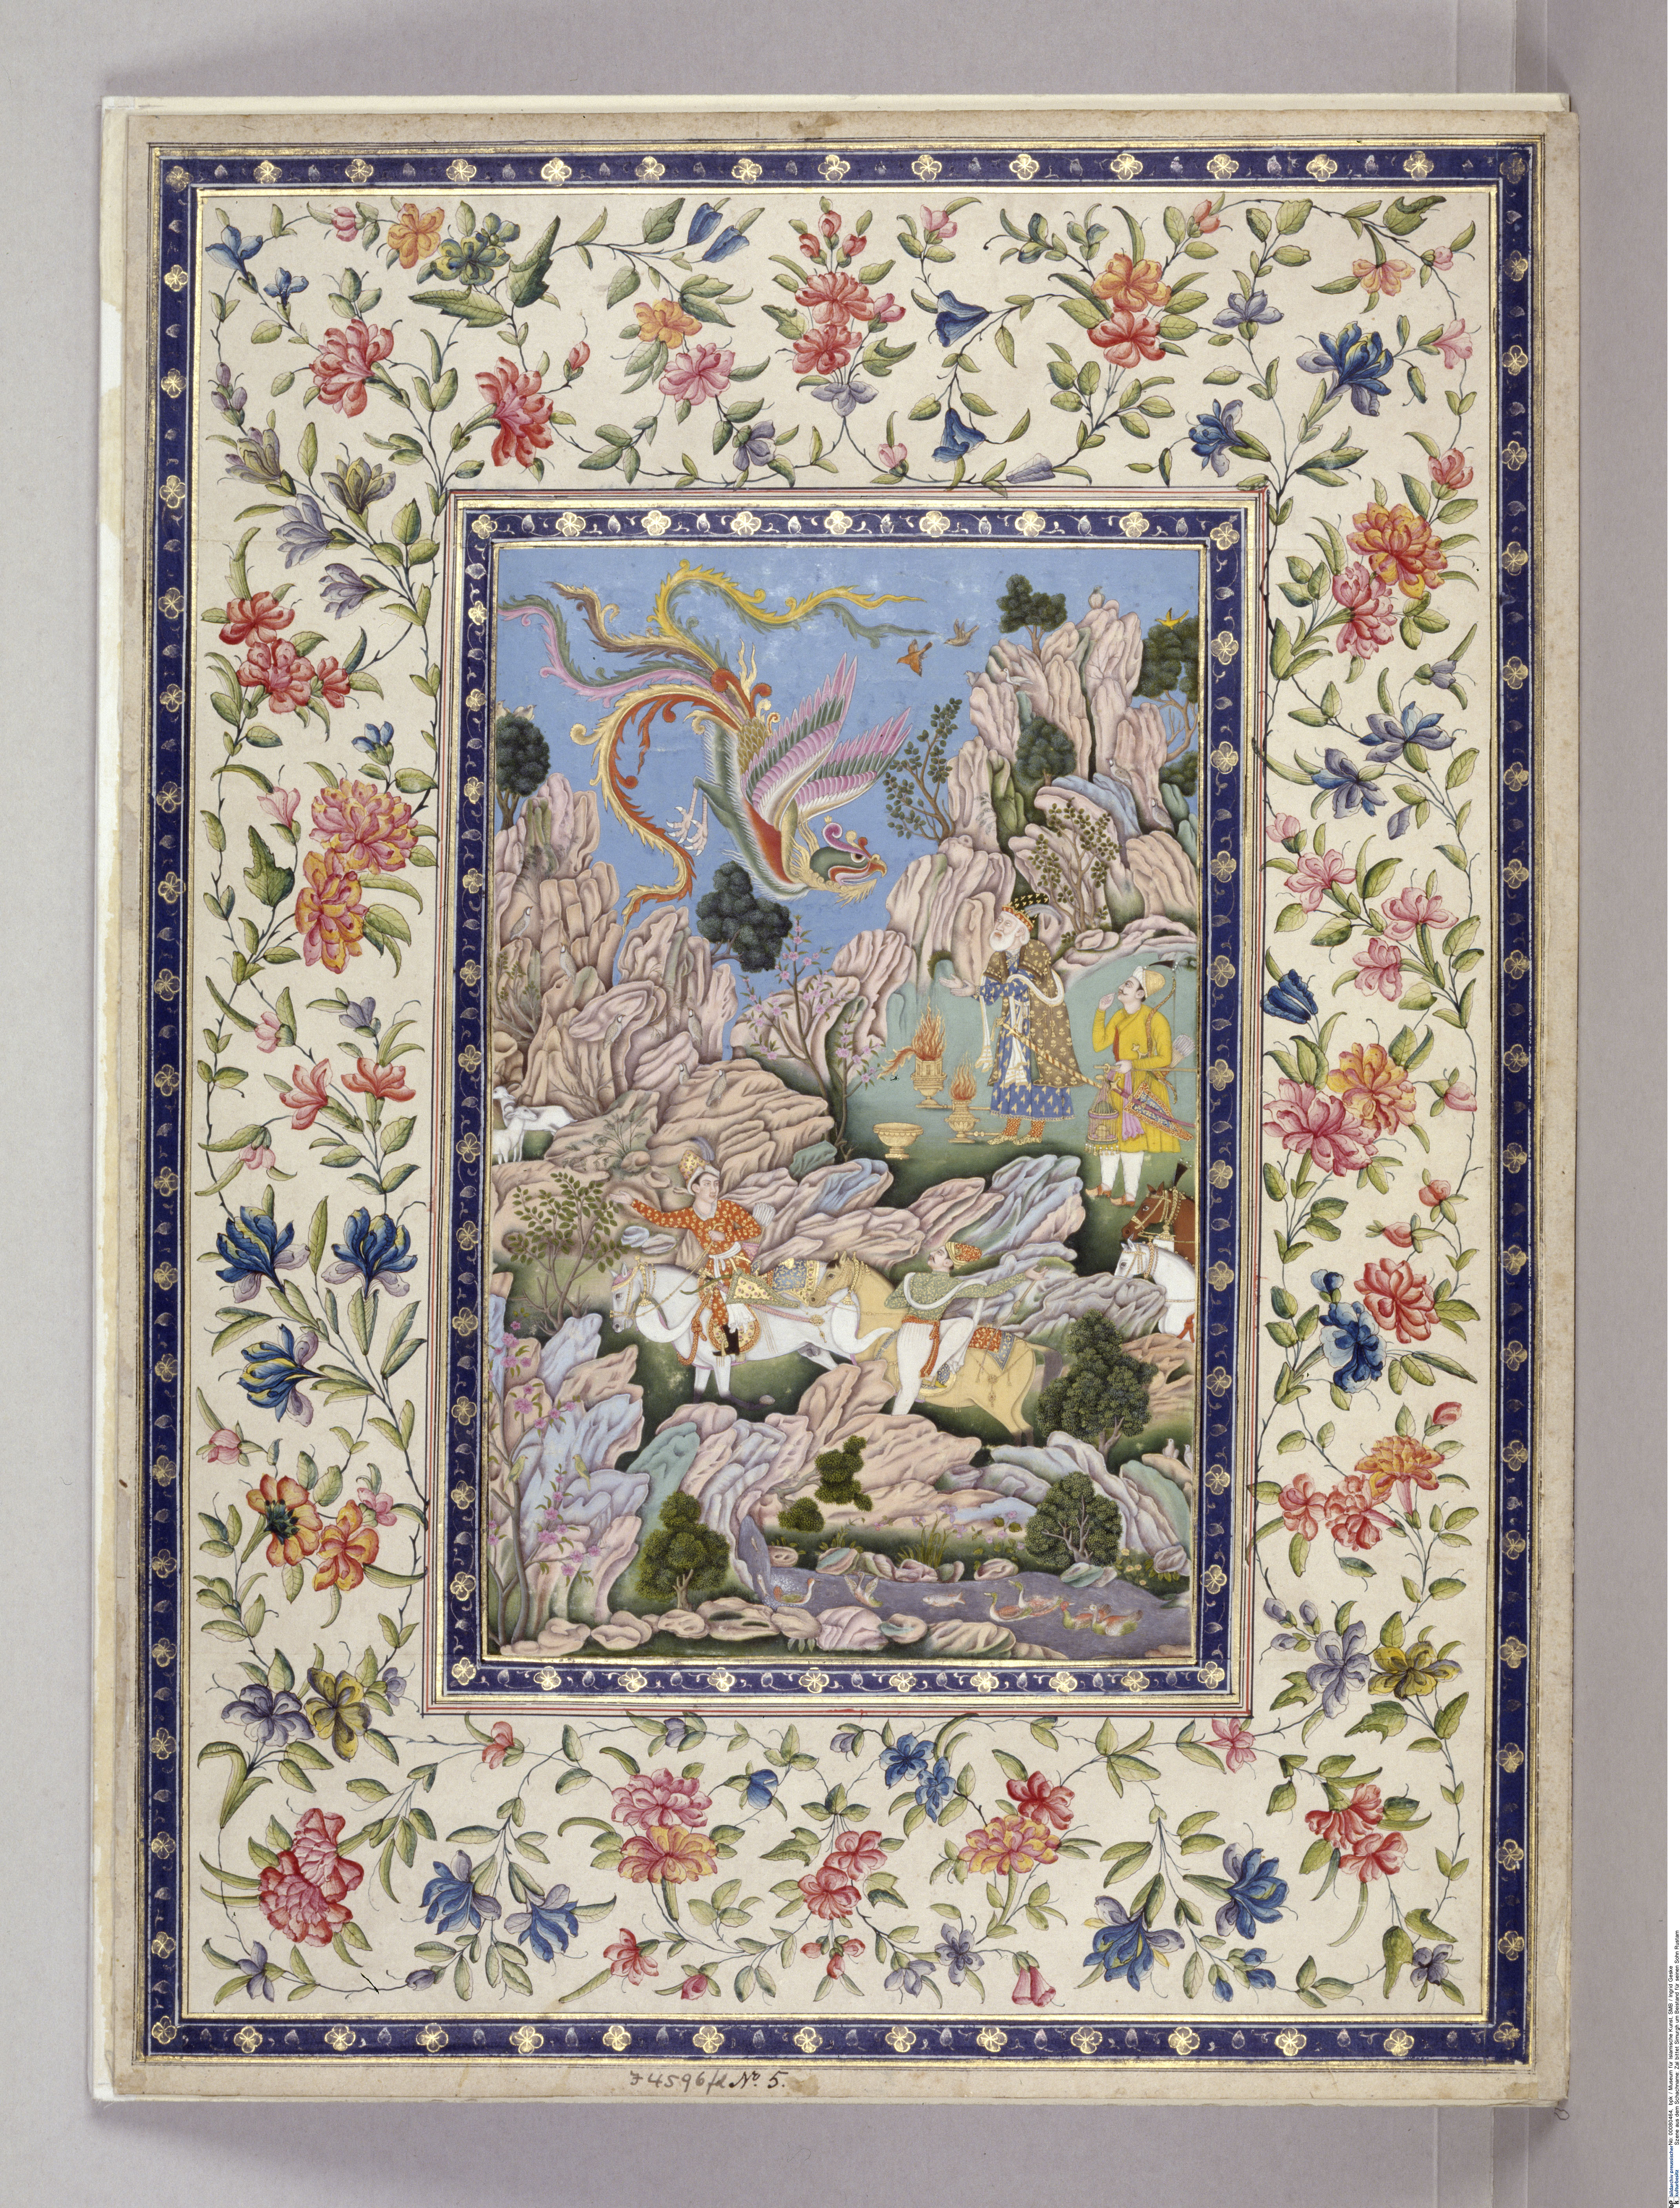 Albumblatt aus dem Shahname, Ident.-Nr. I.4596 fol 5, Museum für Islamische Kunst, Staatliche Museen zu Berlin, Foto: Ingrid Geske